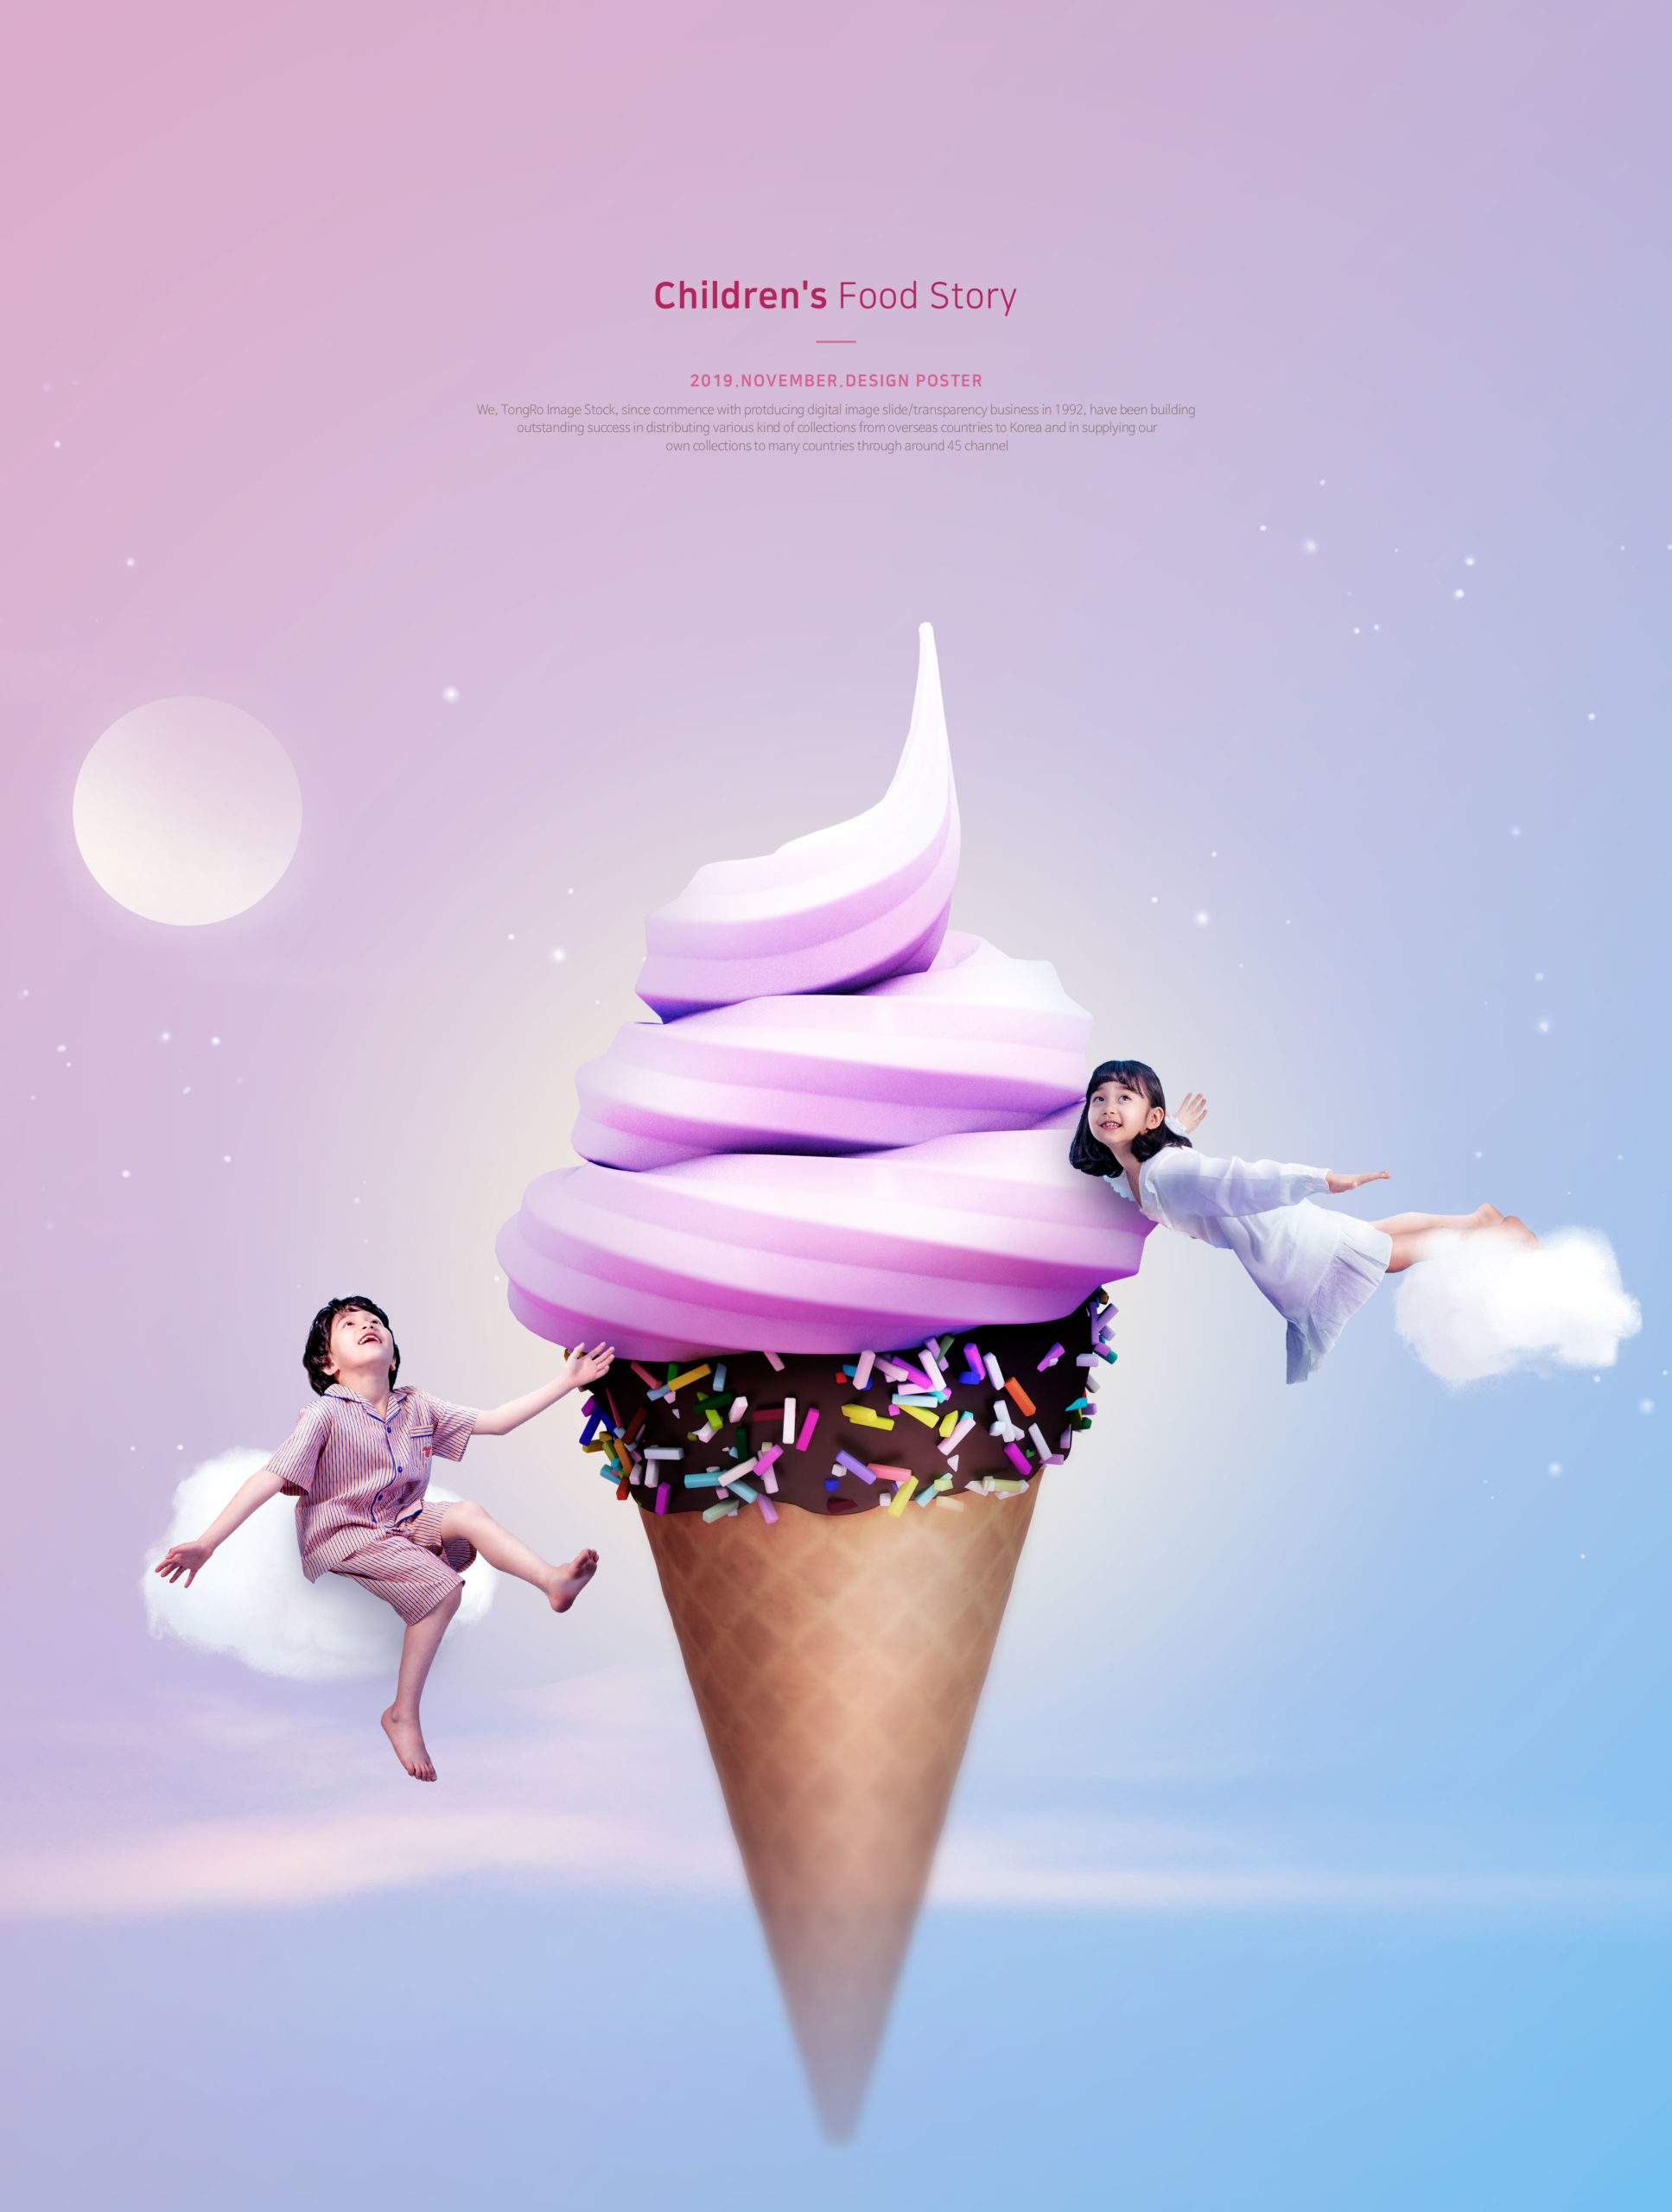 梦幻冰淇淋儿童主题海报PSD素材素材库精选[PSD]插图